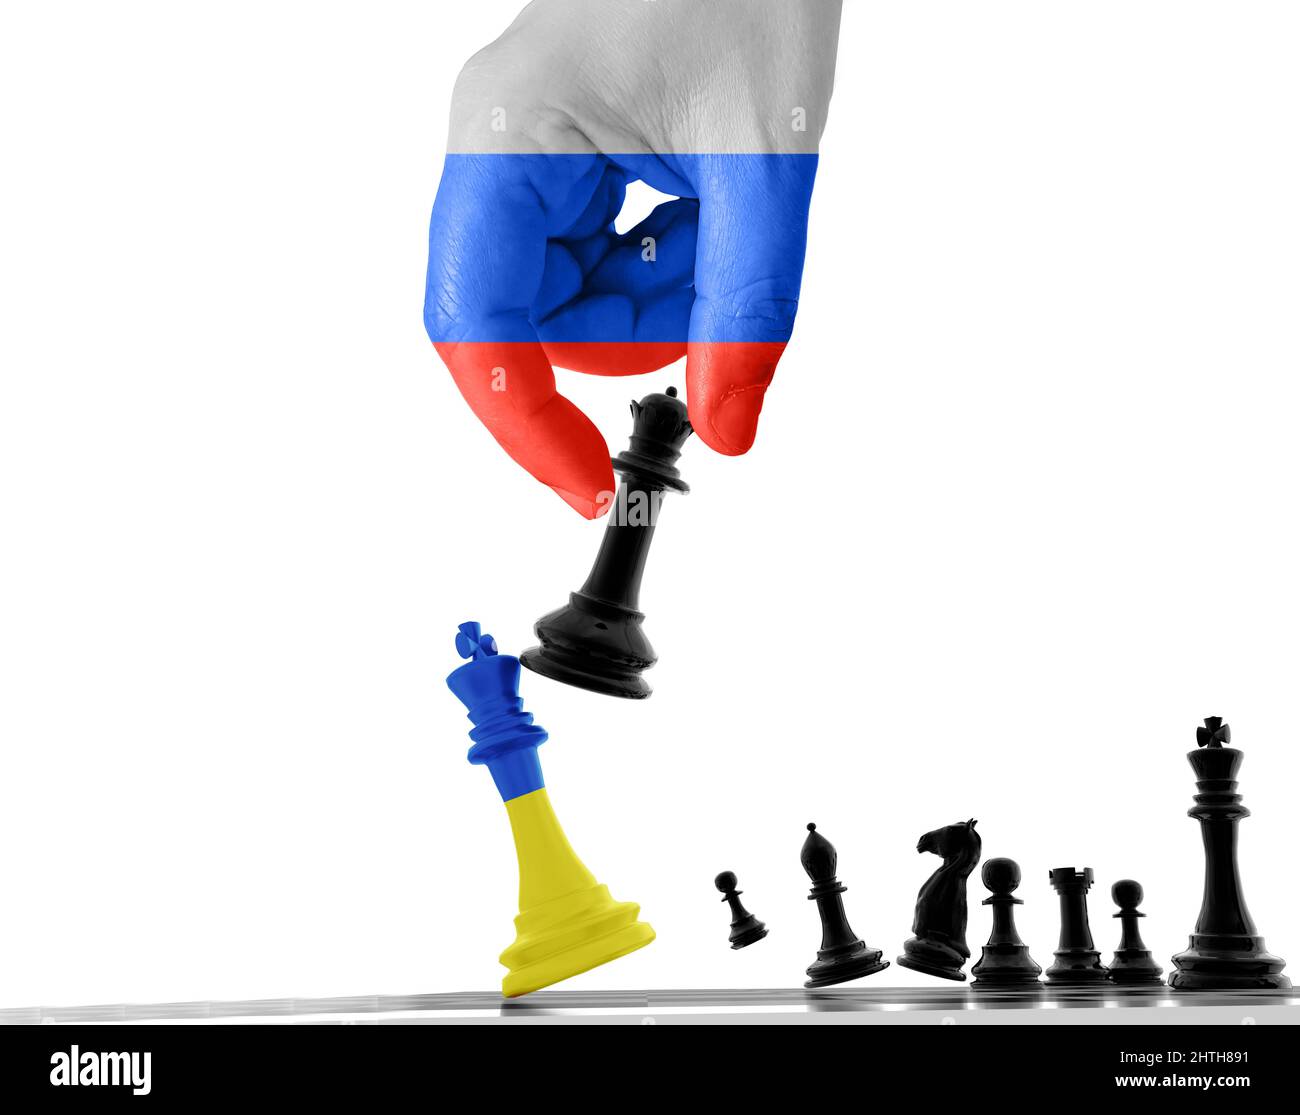 Mundial de ajedrez: Entre la propaganda de Putin y la espantada de